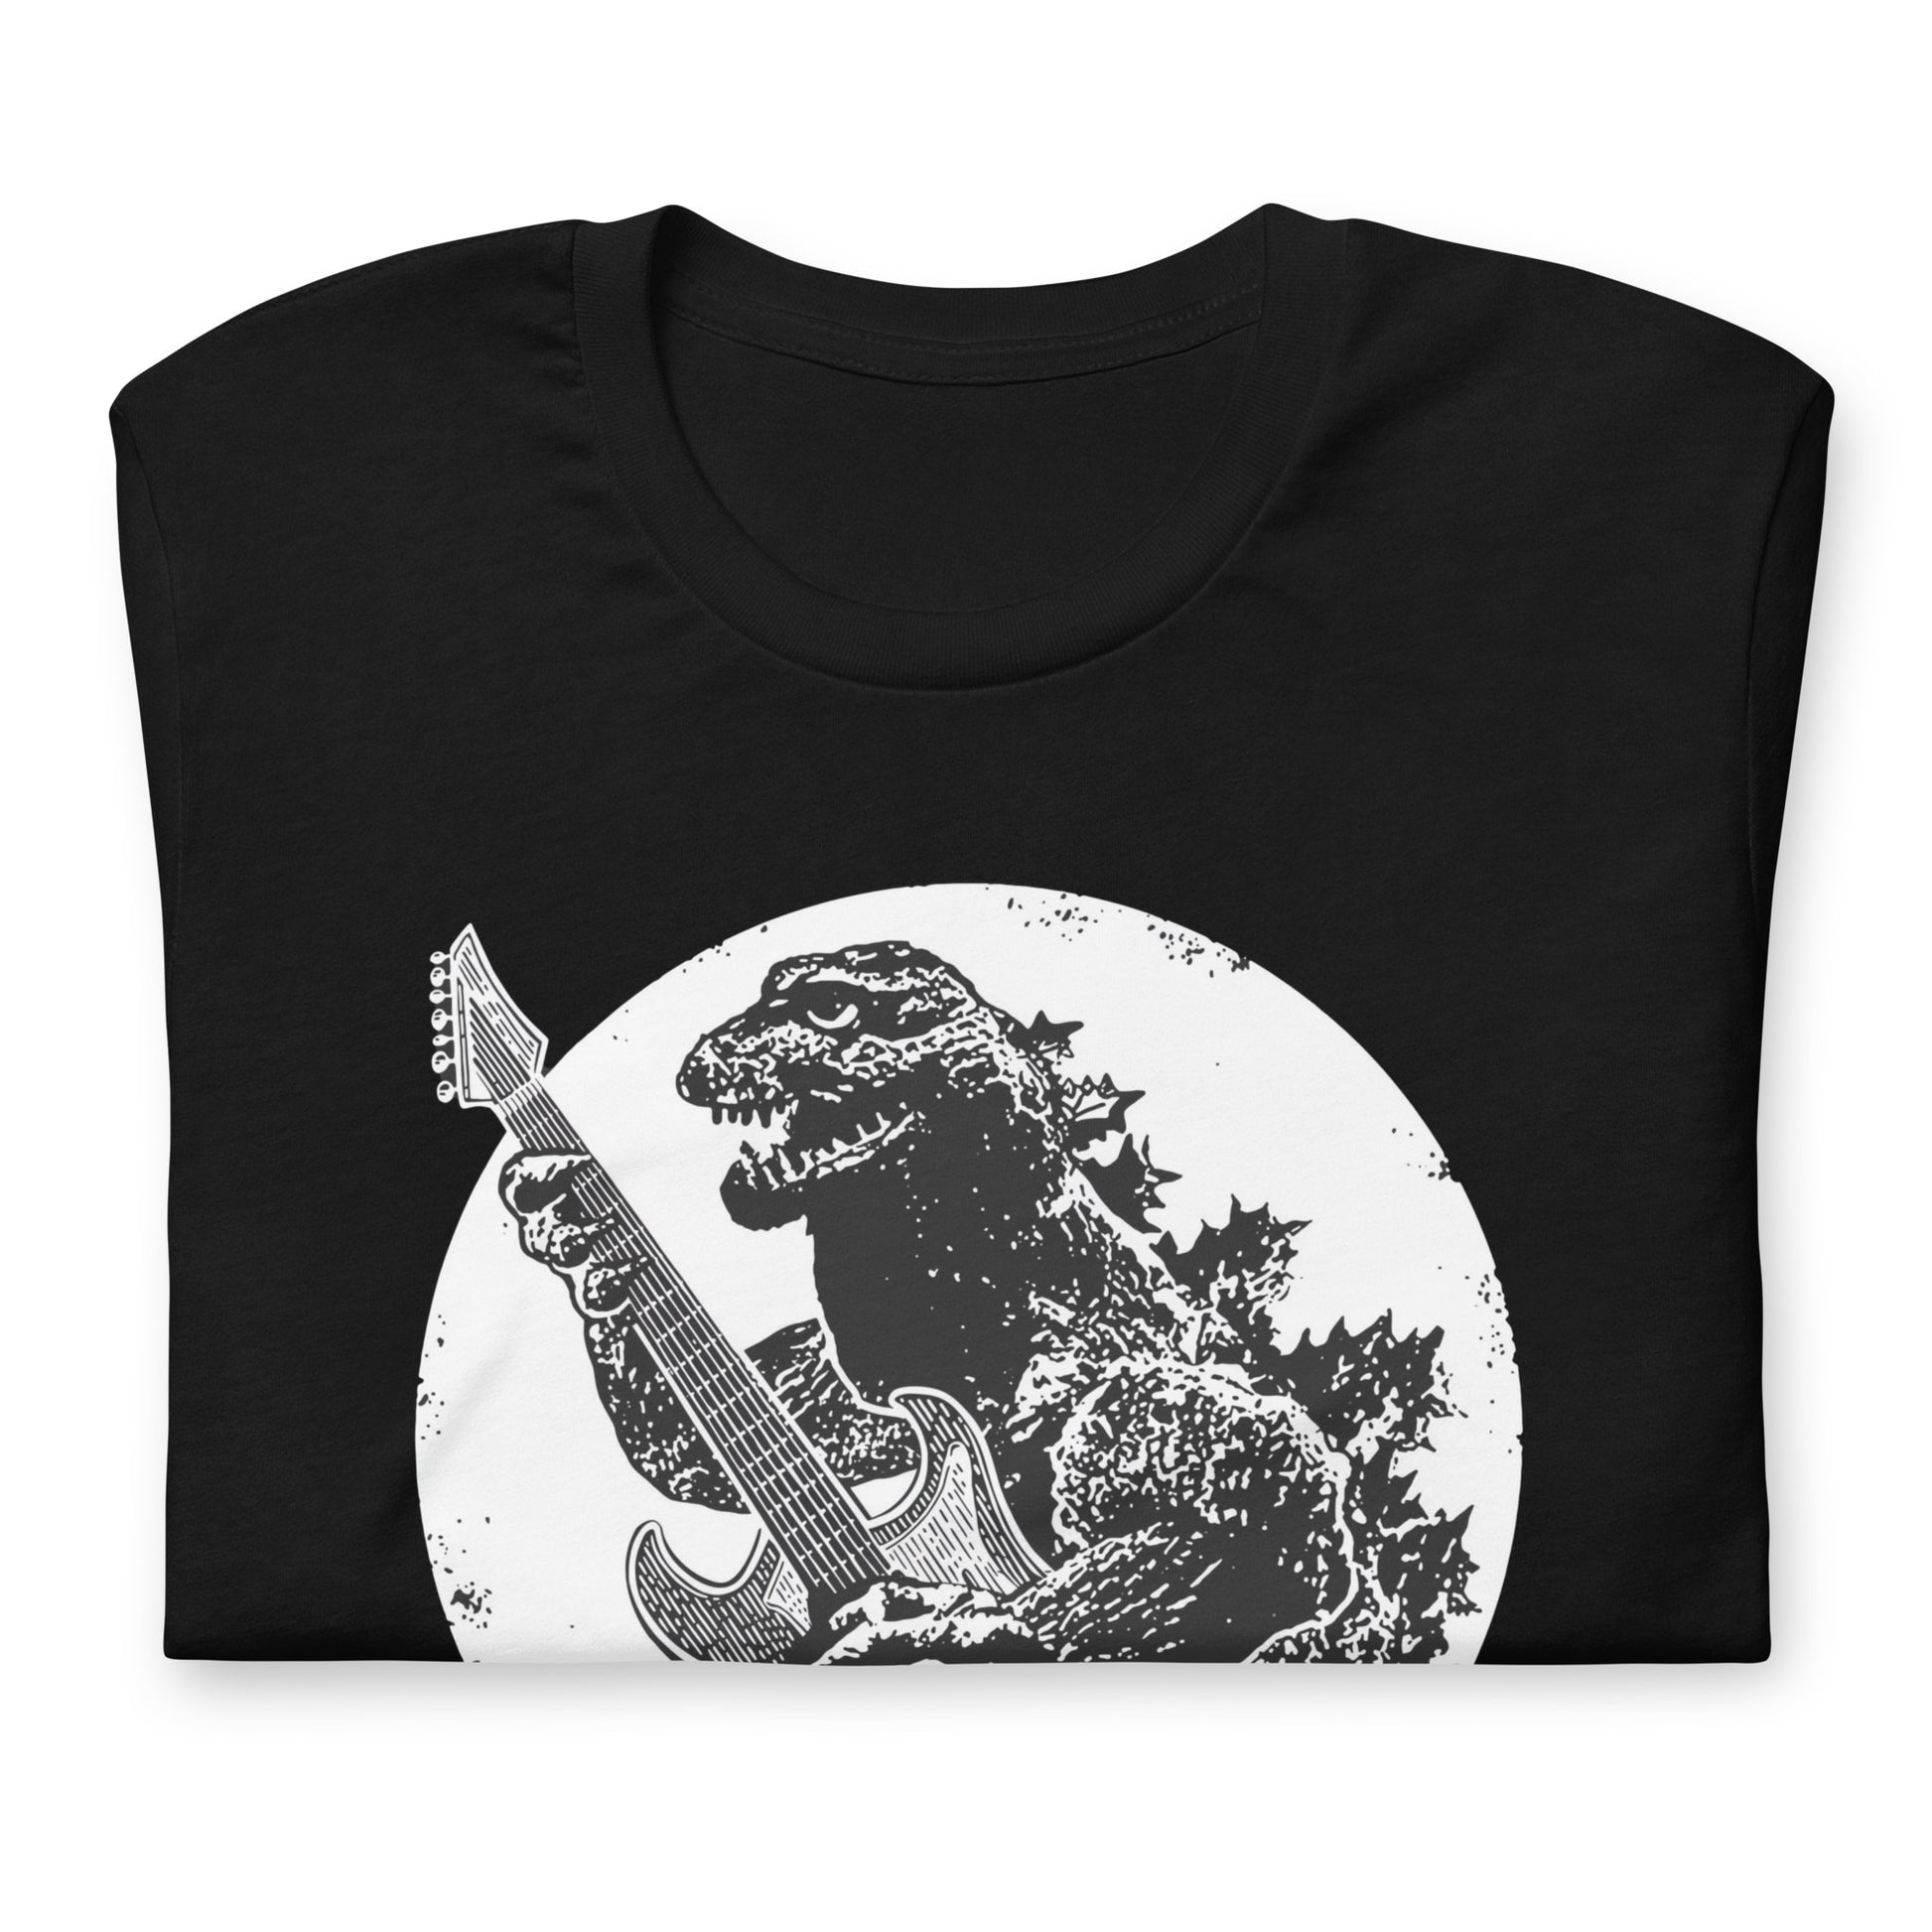 Camiseta Godzilla Sound, nuestras opciones de playeras son Unisex. disponible en Superstar. Compra y envíos internacionales.